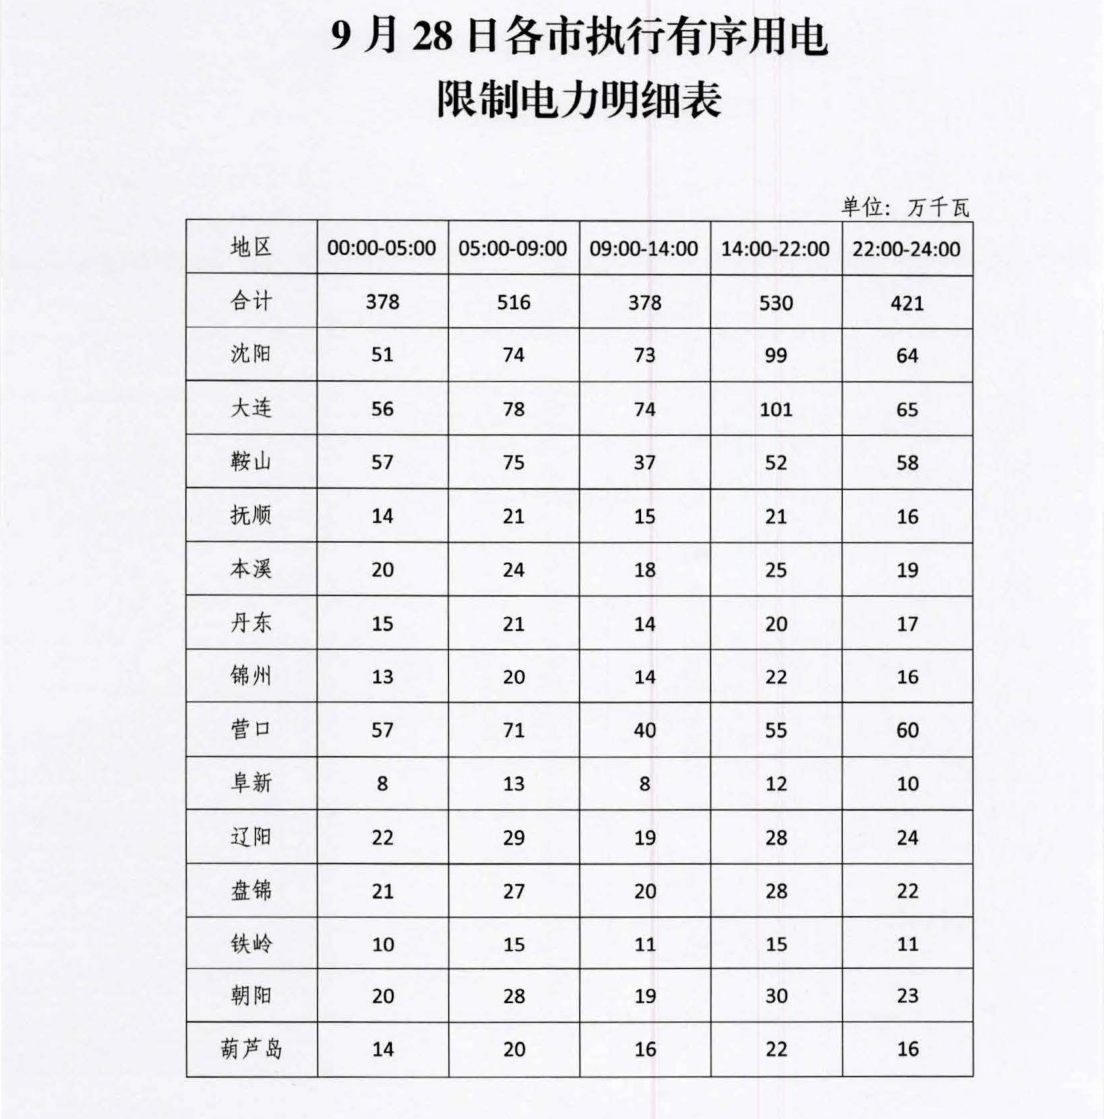 发缺电预警后，辽宁公布今日各市执行有序用电限制电力明细表